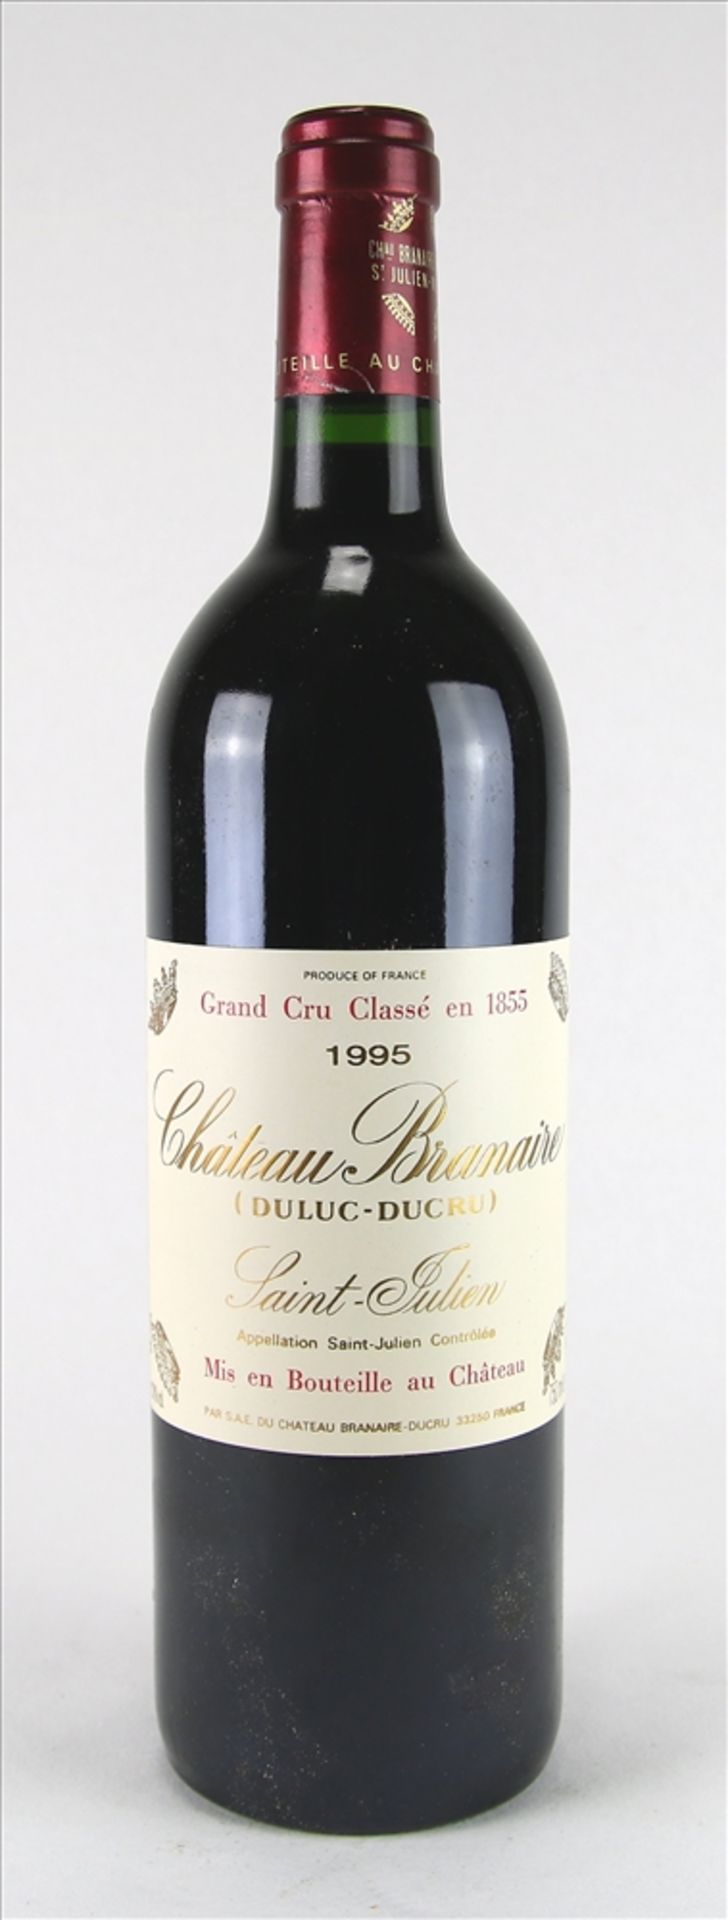 Flasche Chateau Branaire 1995 Saint-Julien. Grand Cru classé. 0,75 Liter. Füllstand Mitte Hals,